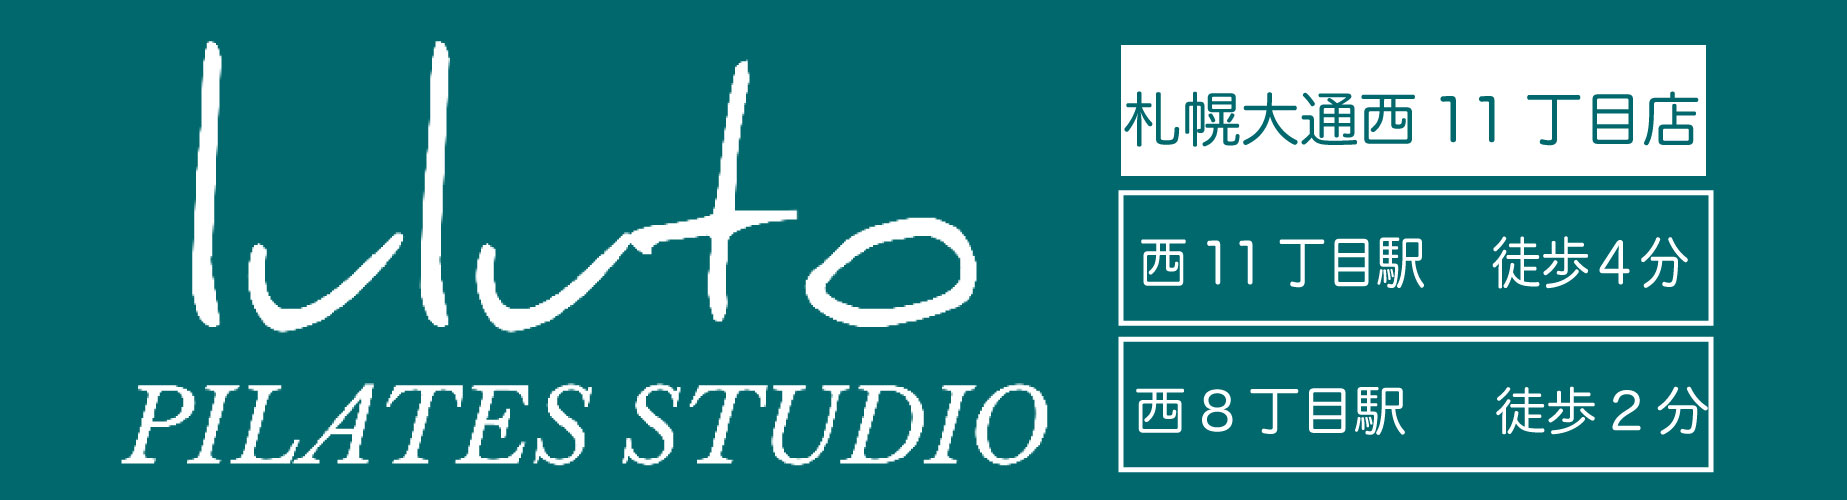 ピラティススタジオ『ルルト』札幌大通西11丁目店